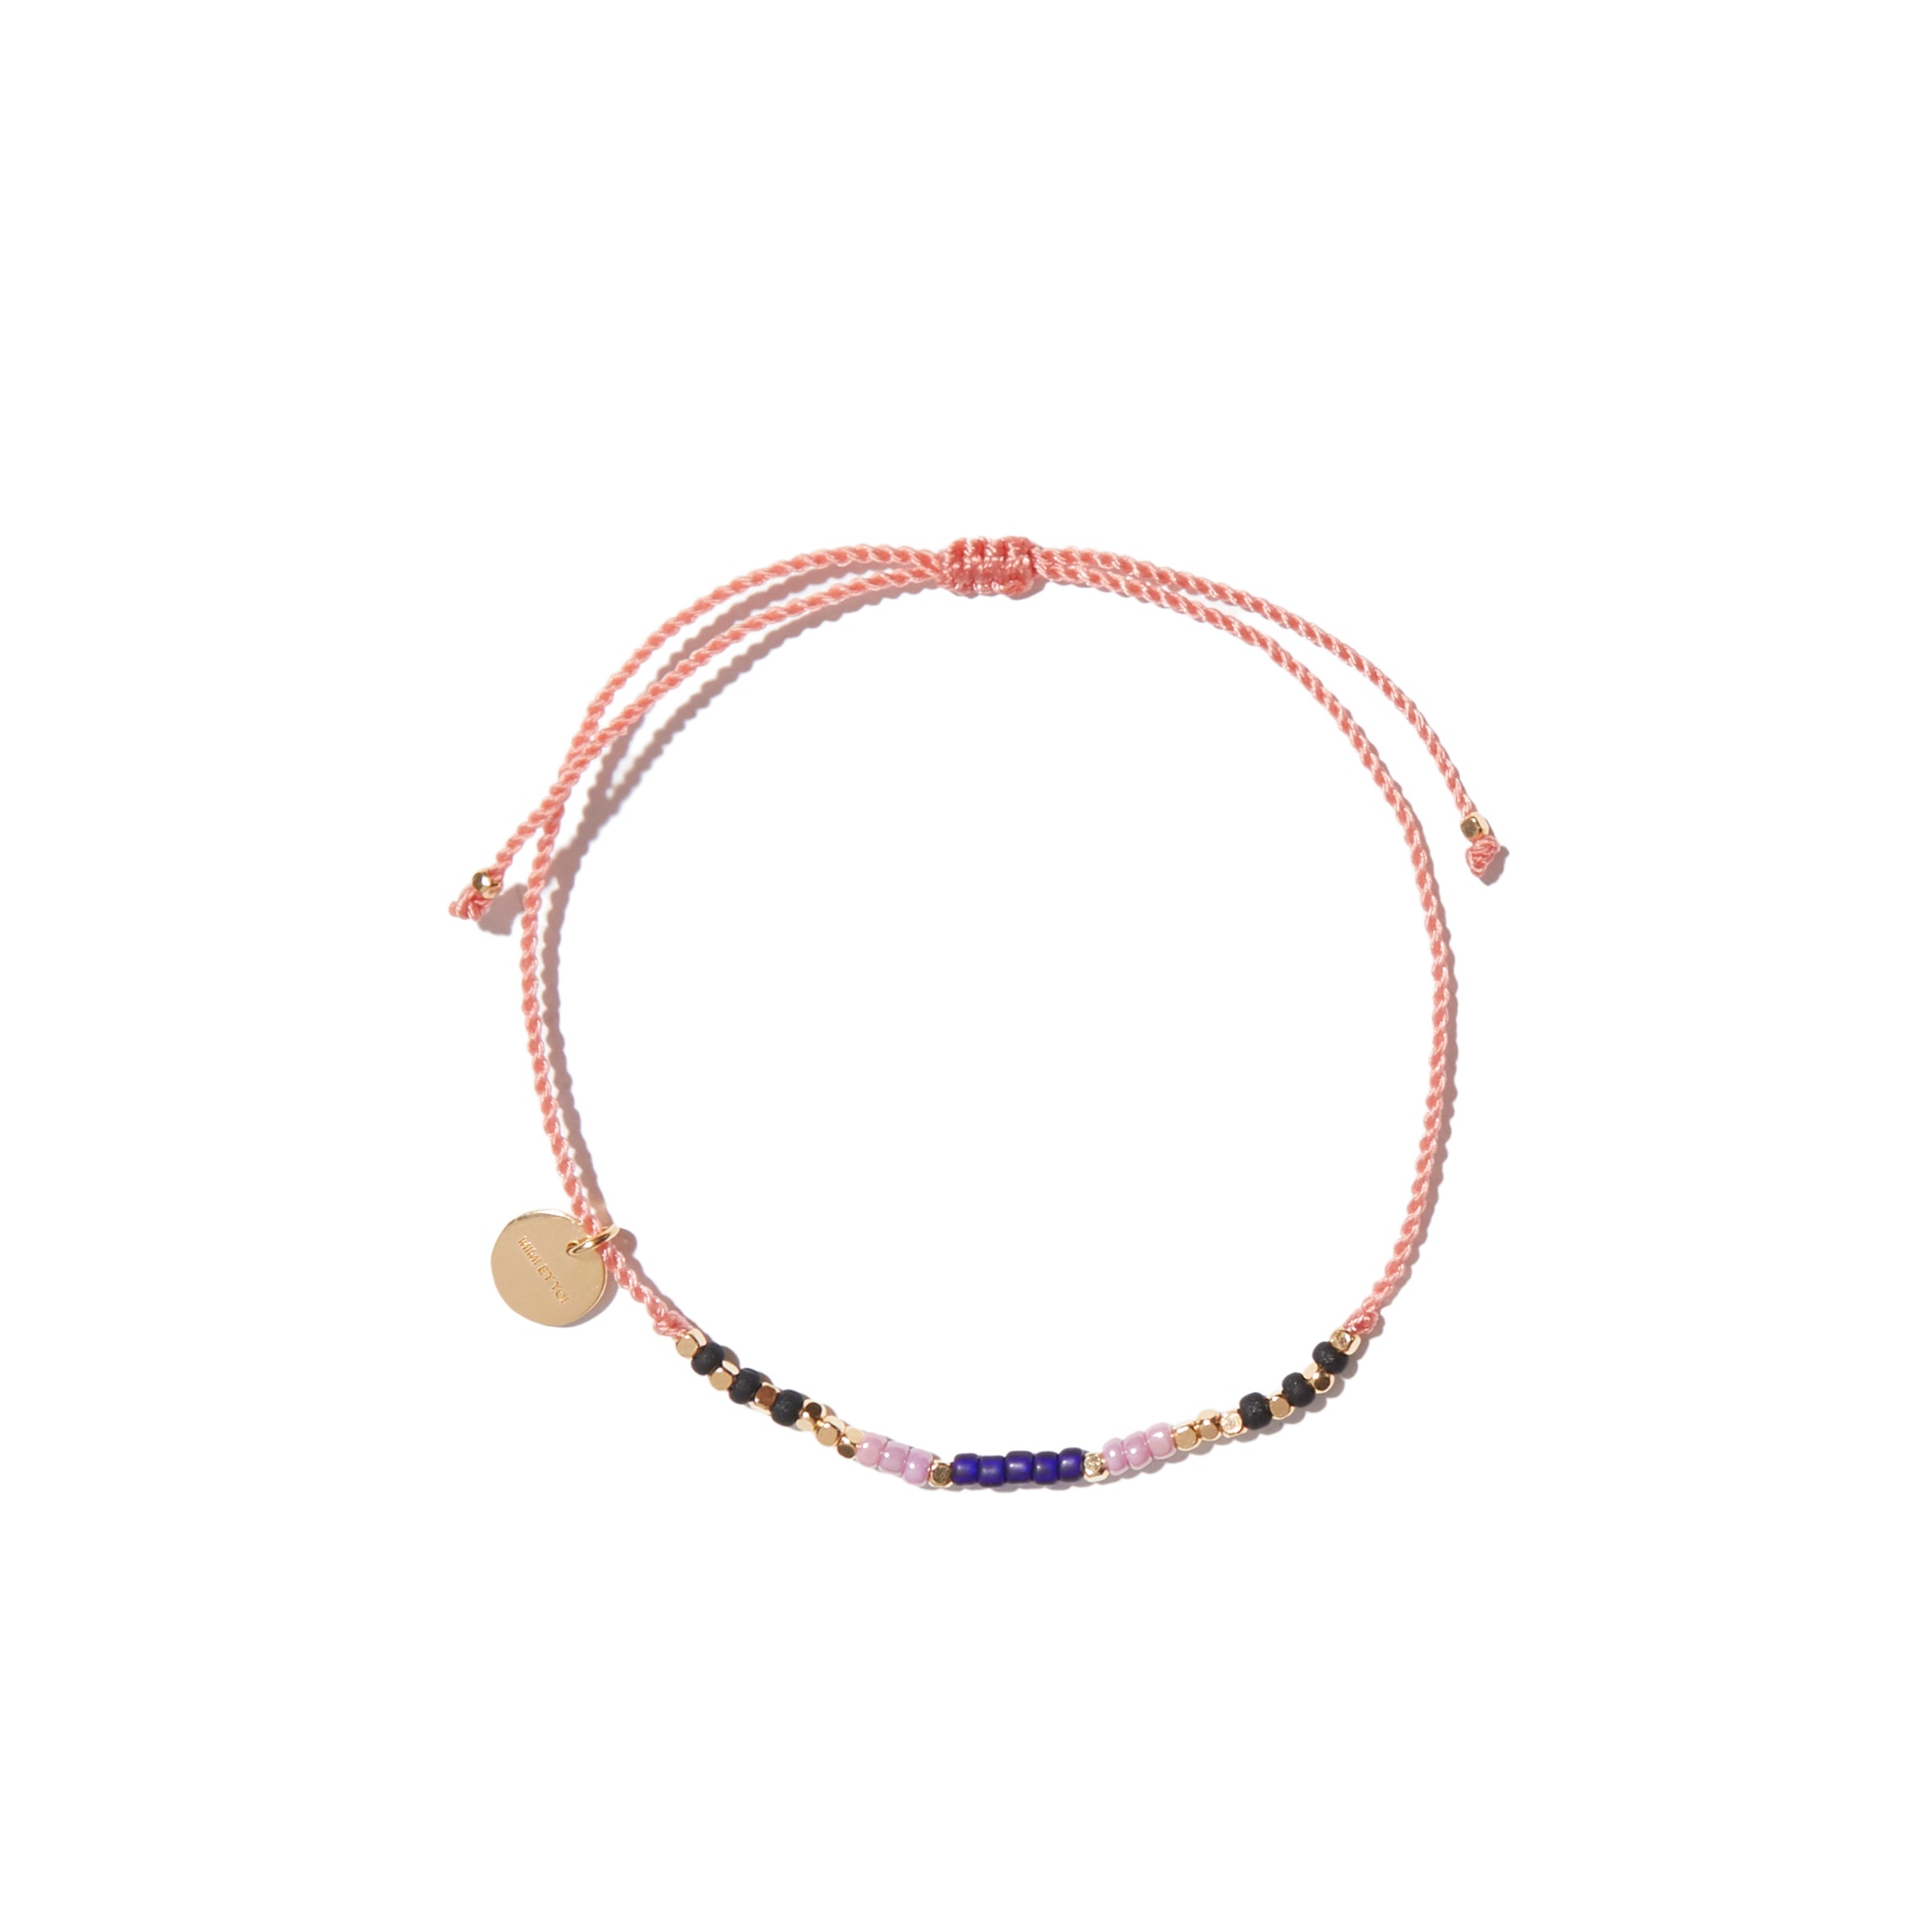 Flori pink mix bracelet